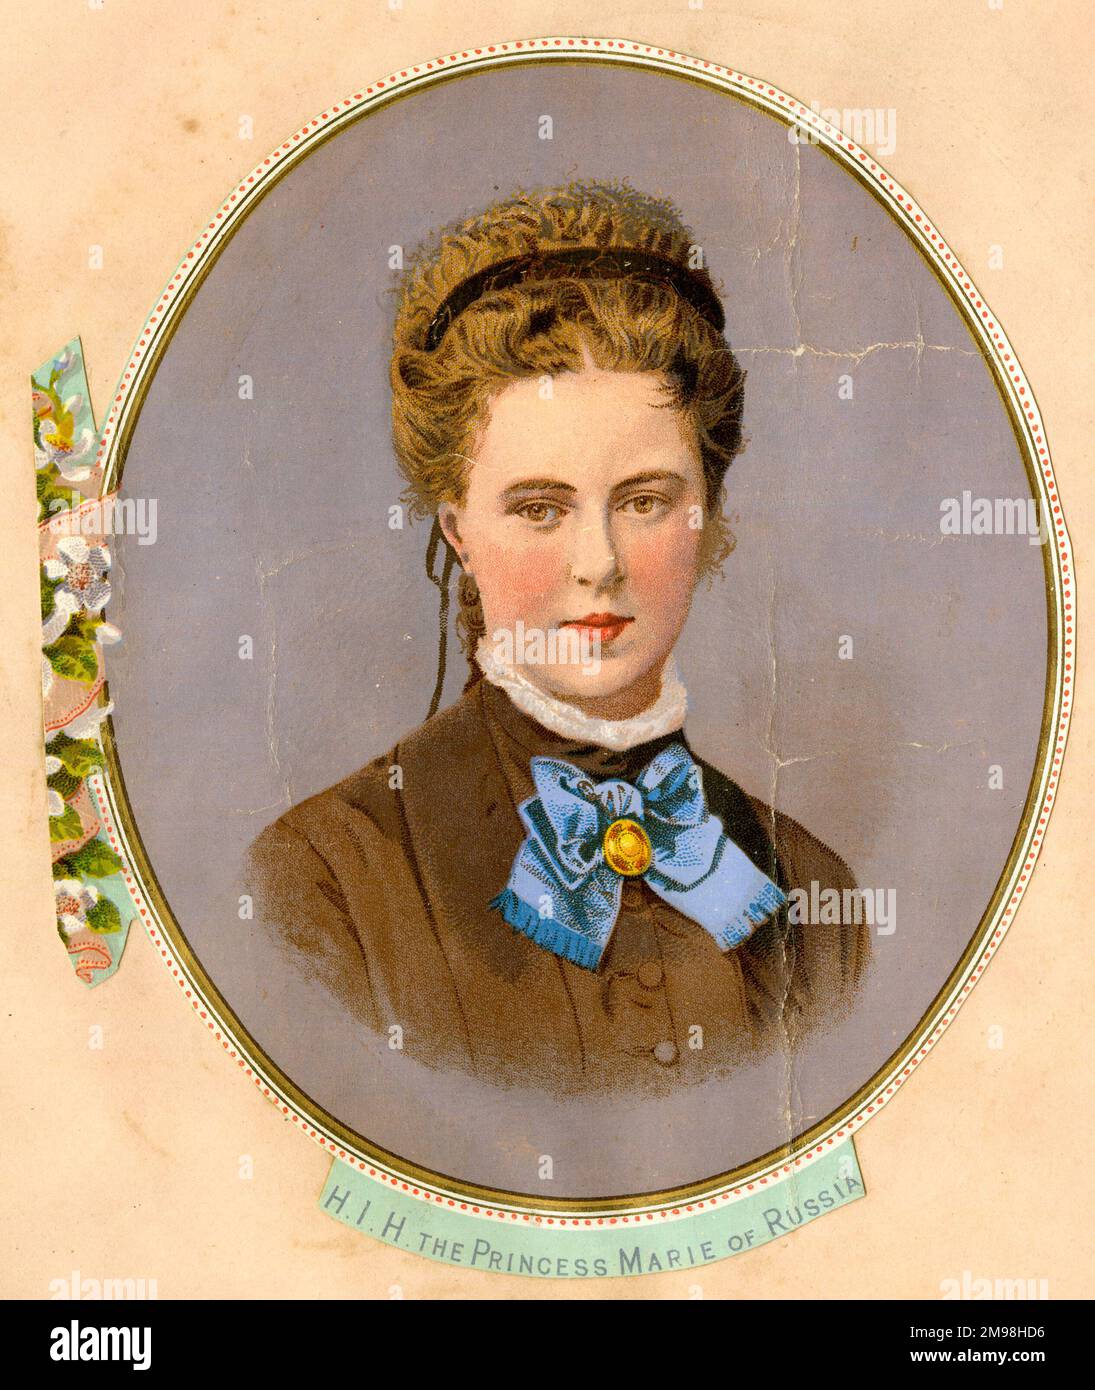 Principessa Maria di Russia (Granduchessa Maria Alexandrovna di Russia, 1853-1920), al momento del suo matrimonio con il Duca di Edimburgo (Alfred, Duca di Sassonia-Coburg e Gotha), secondo figlio della Regina Vittoria. Foto Stock